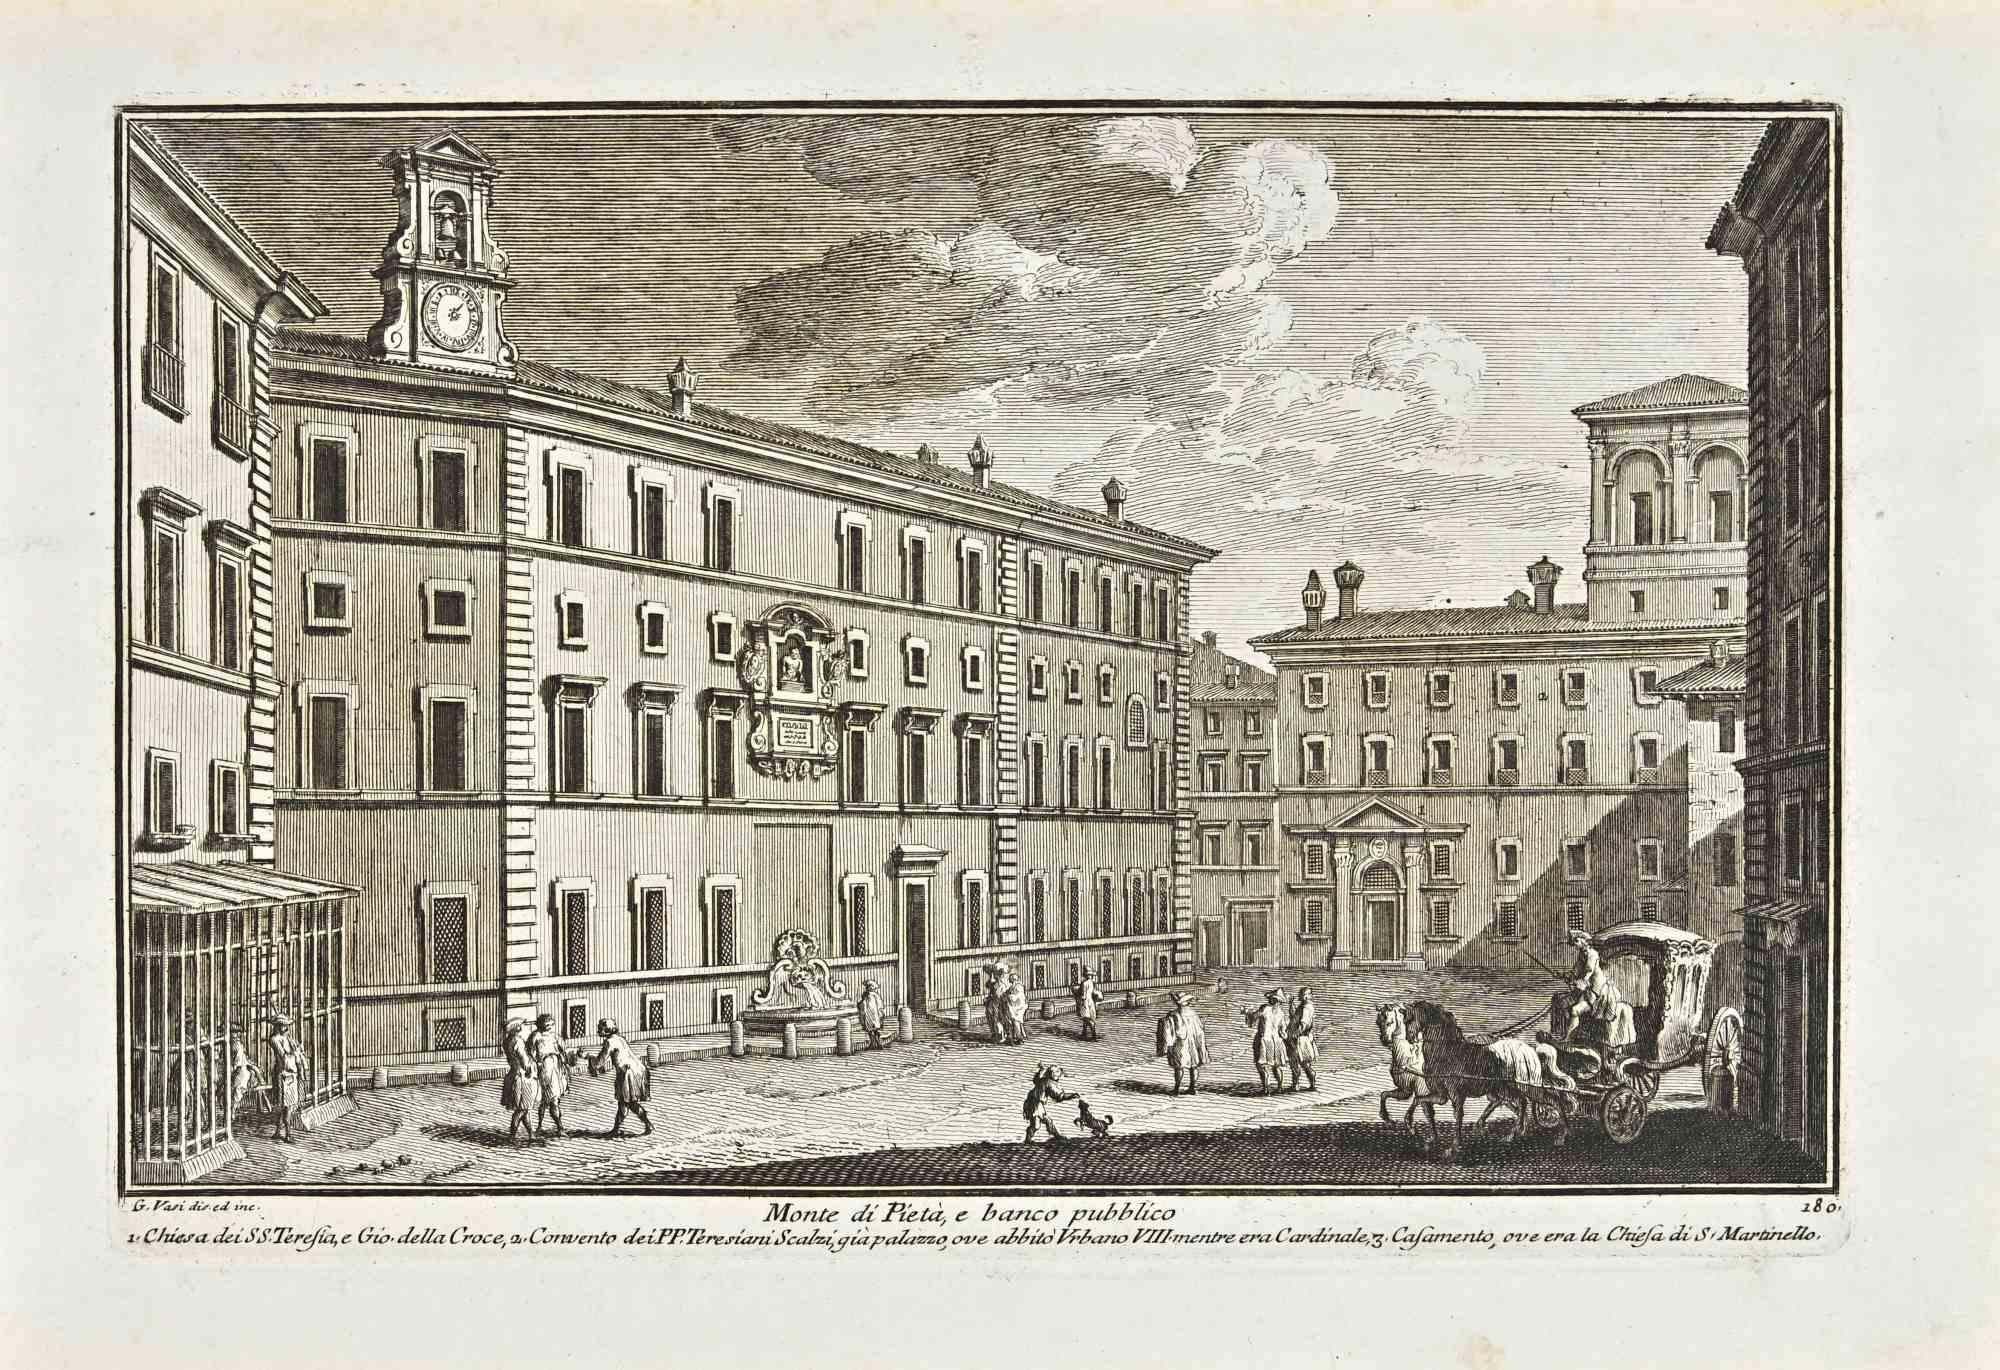 Monte di Pieta e banco Pubblico - Etching by Giuseppe Vasi - 18th century